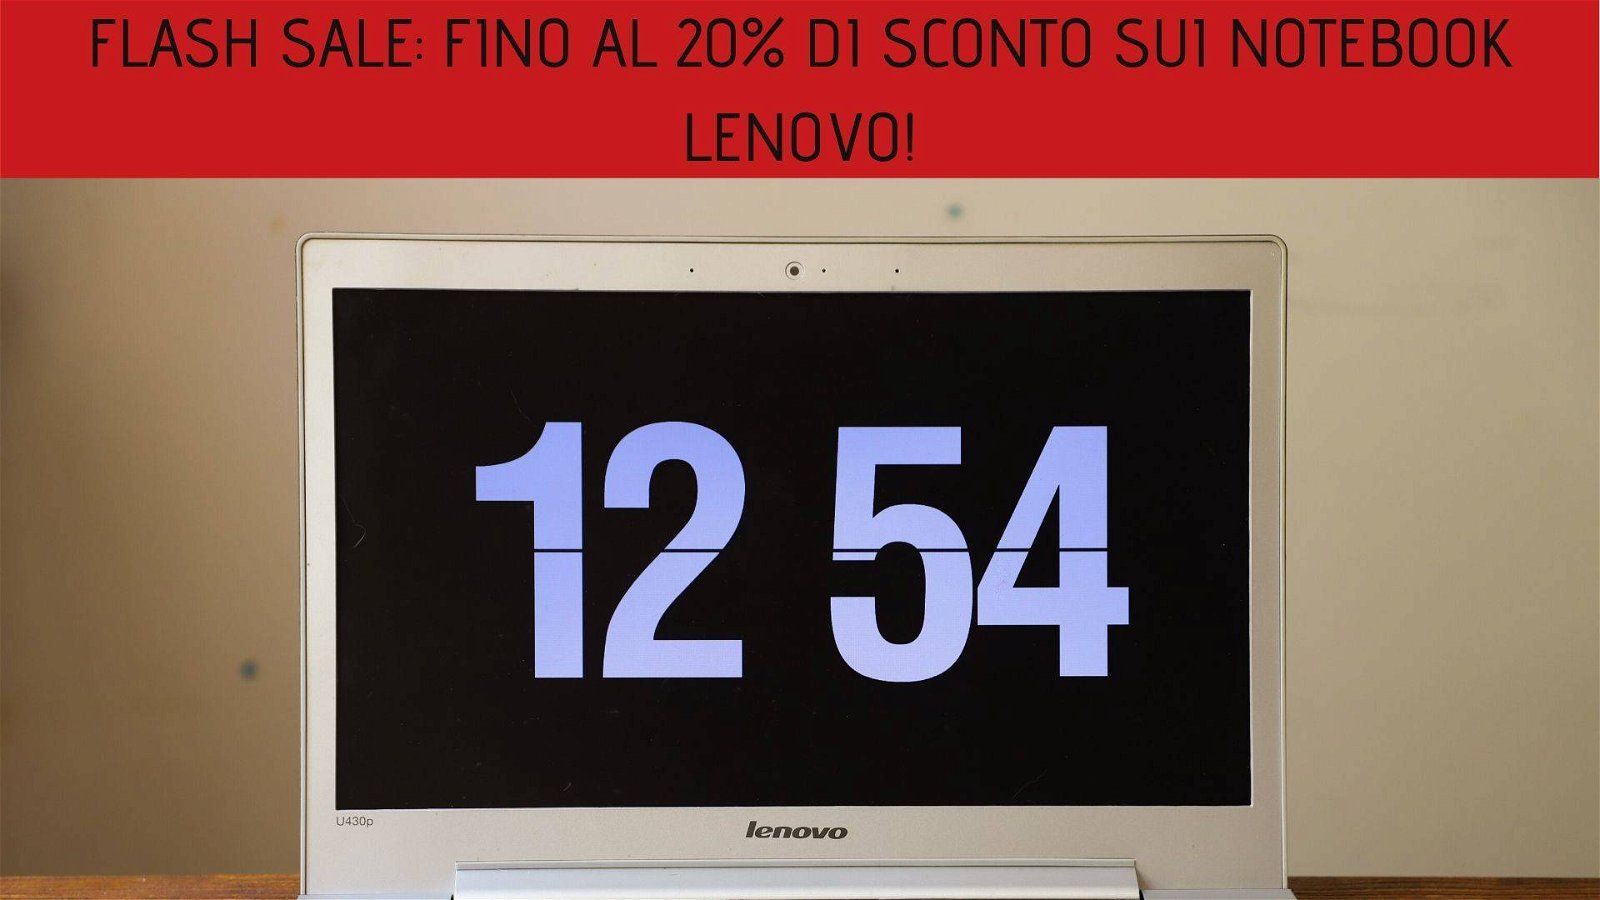 Immagine di Flash sale: fino al 20% di sconto sui Notebook Lenovo!